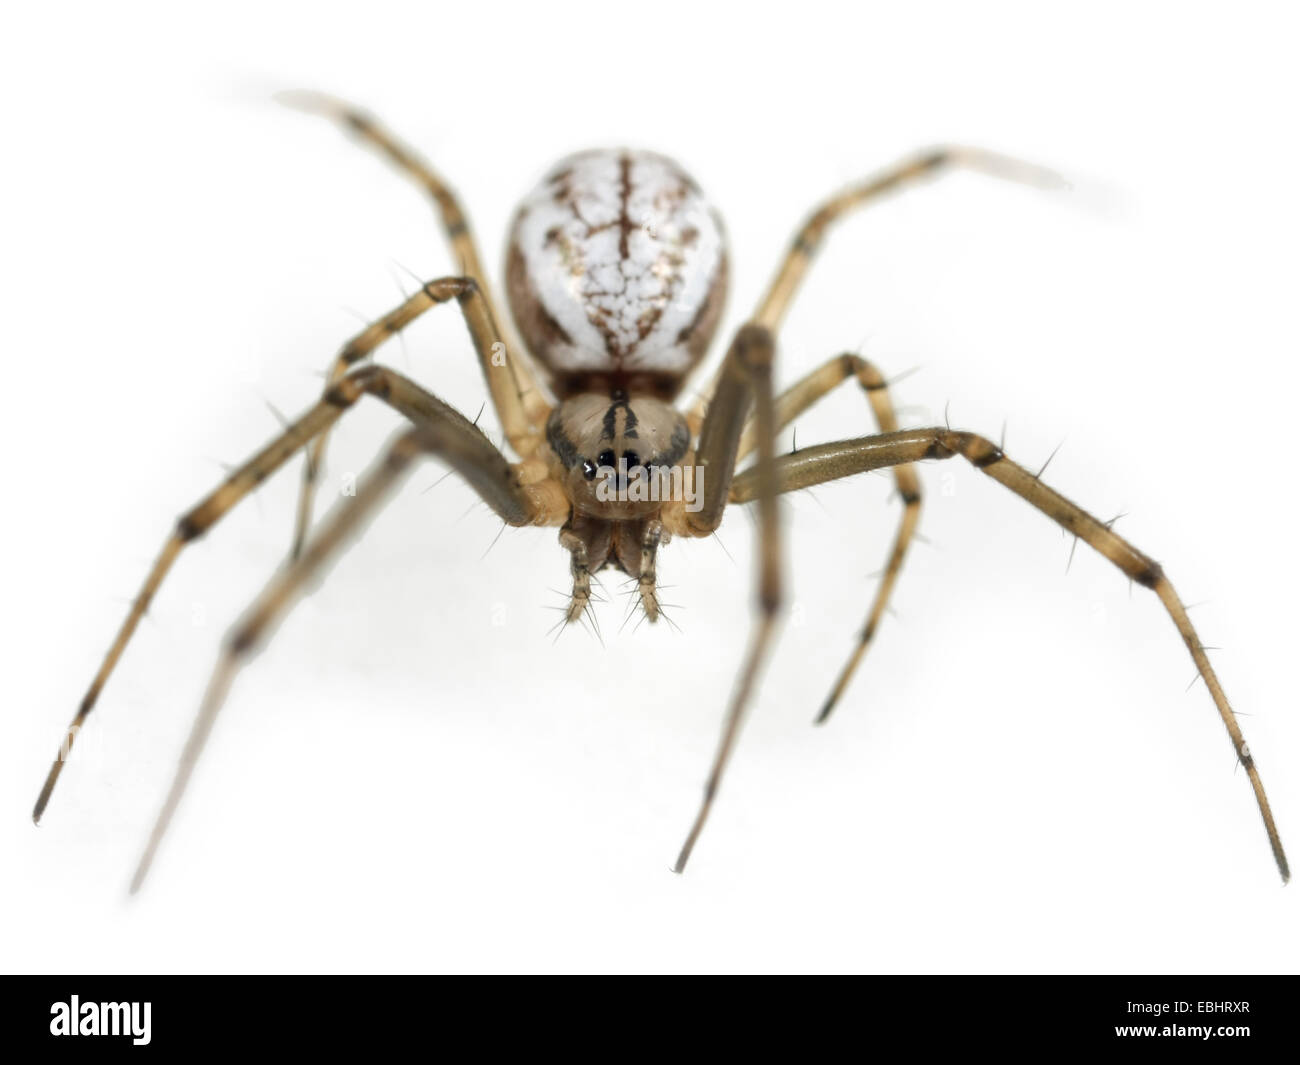 Eine weibliche Gemeinsame Hängematte - Weaver (Linyphia Triangularis) Spinne auf einem weißen Hintergrund, ein Teil der Familie - Linyphiidae Sheetweb Weber. Stockfoto